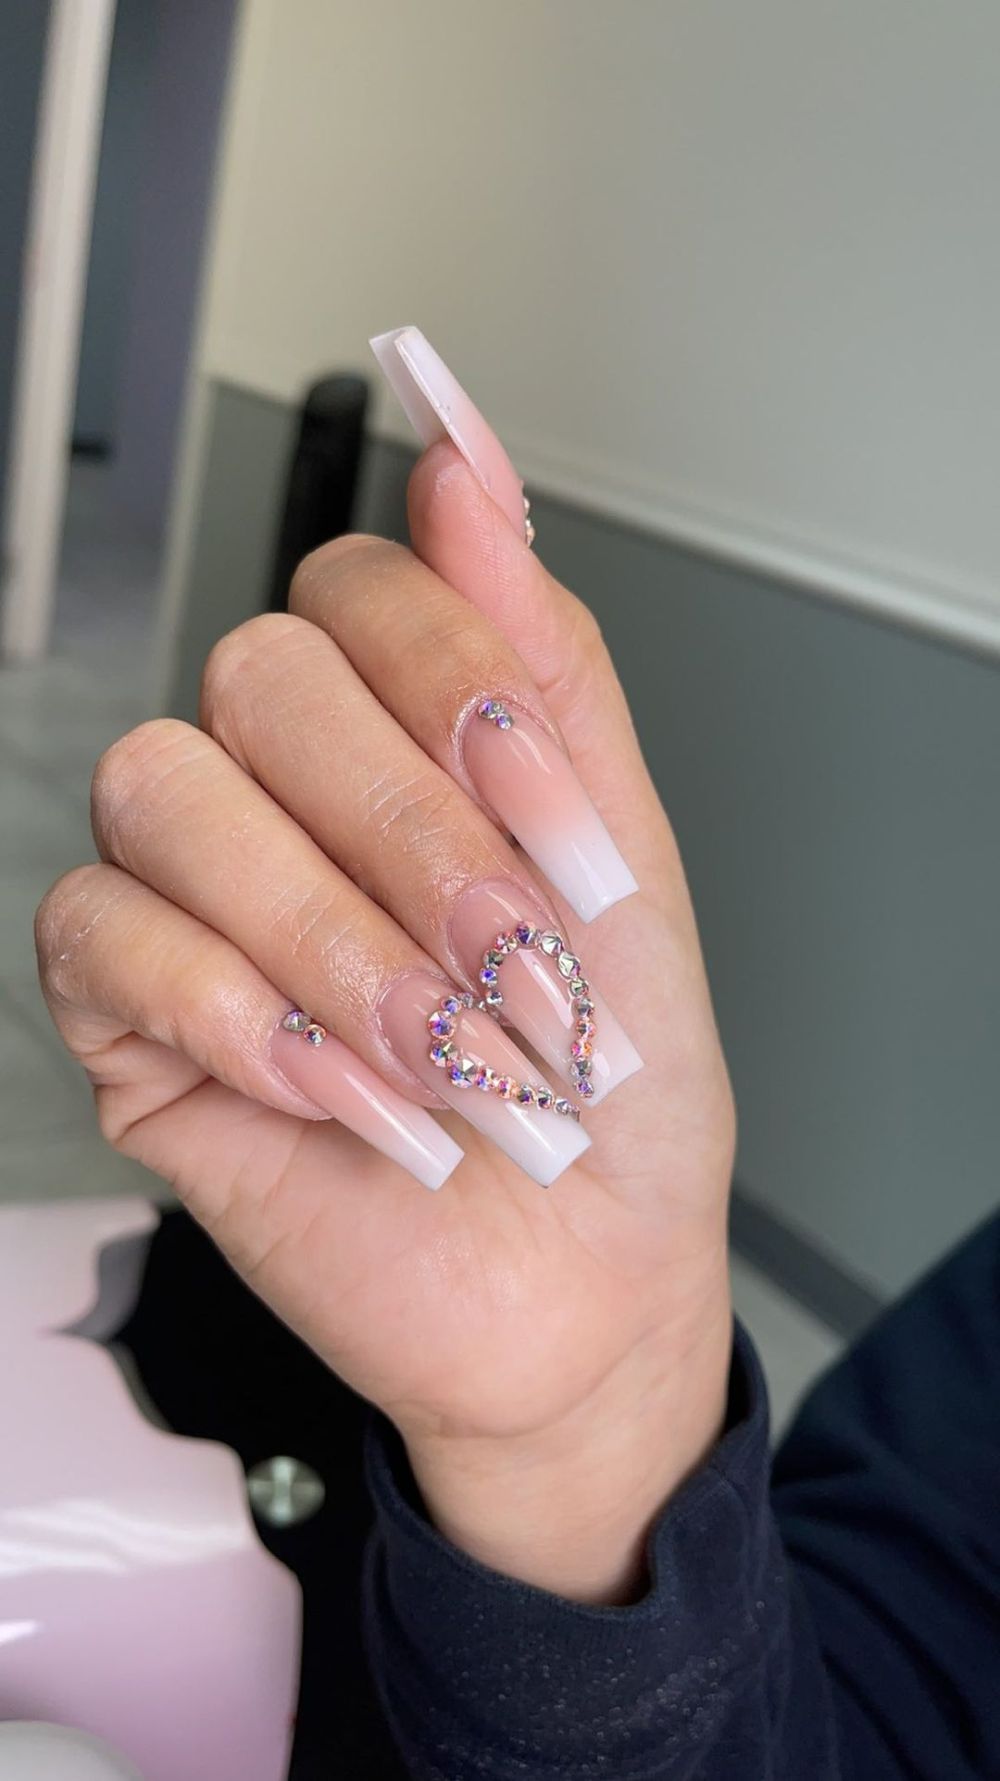 Crystal heart nails